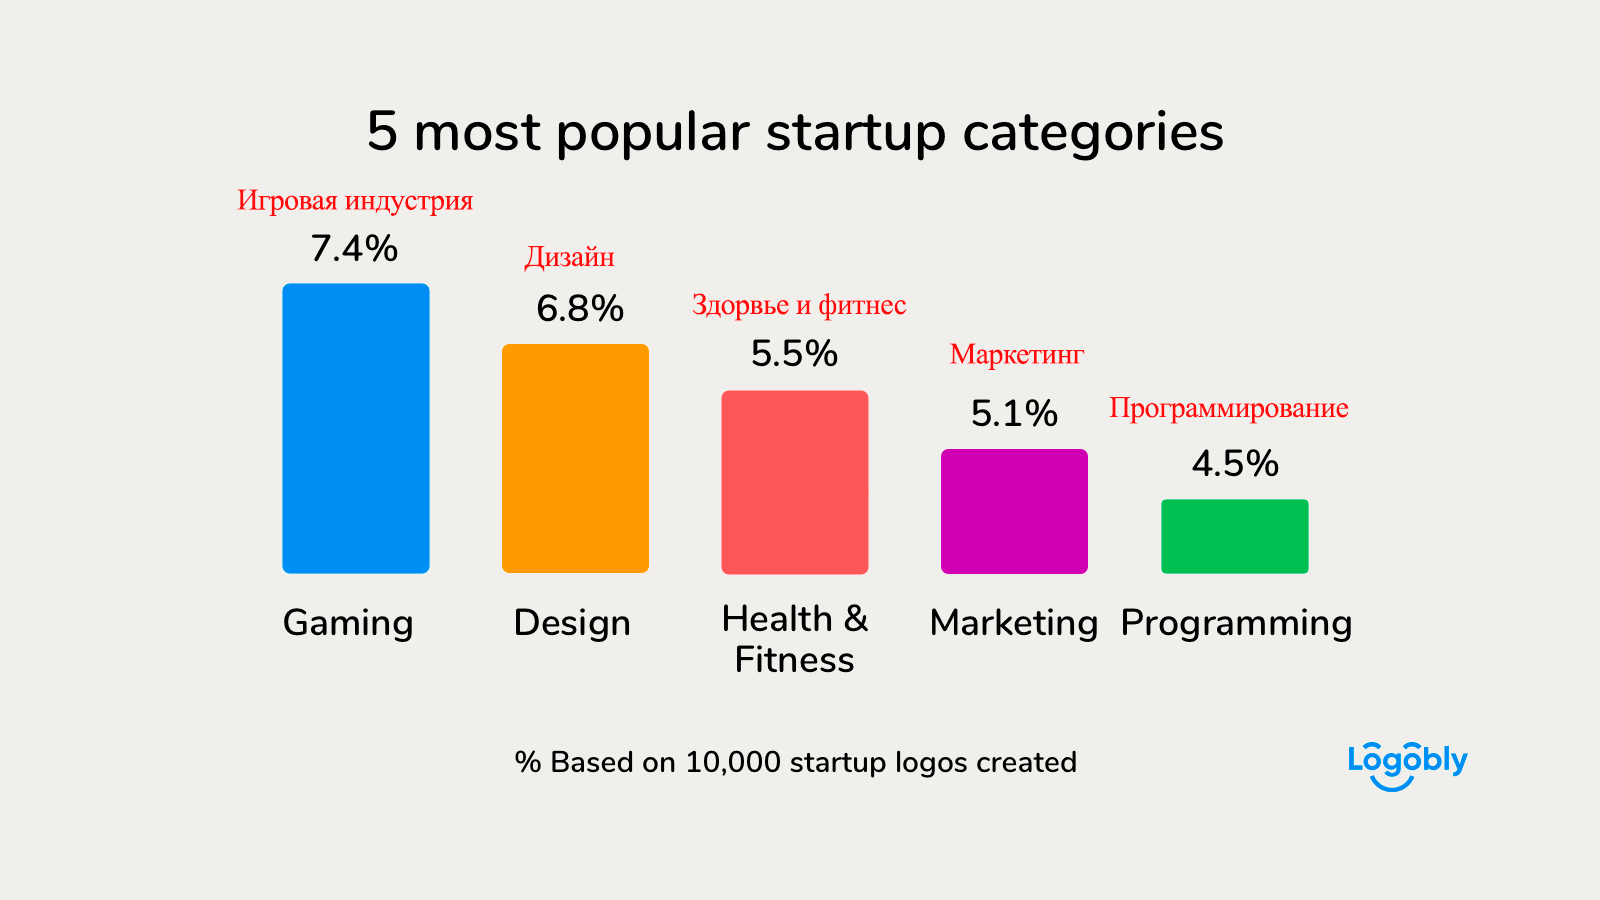 Брендирование для стартапов: популярные сферы стартапов, инфографика